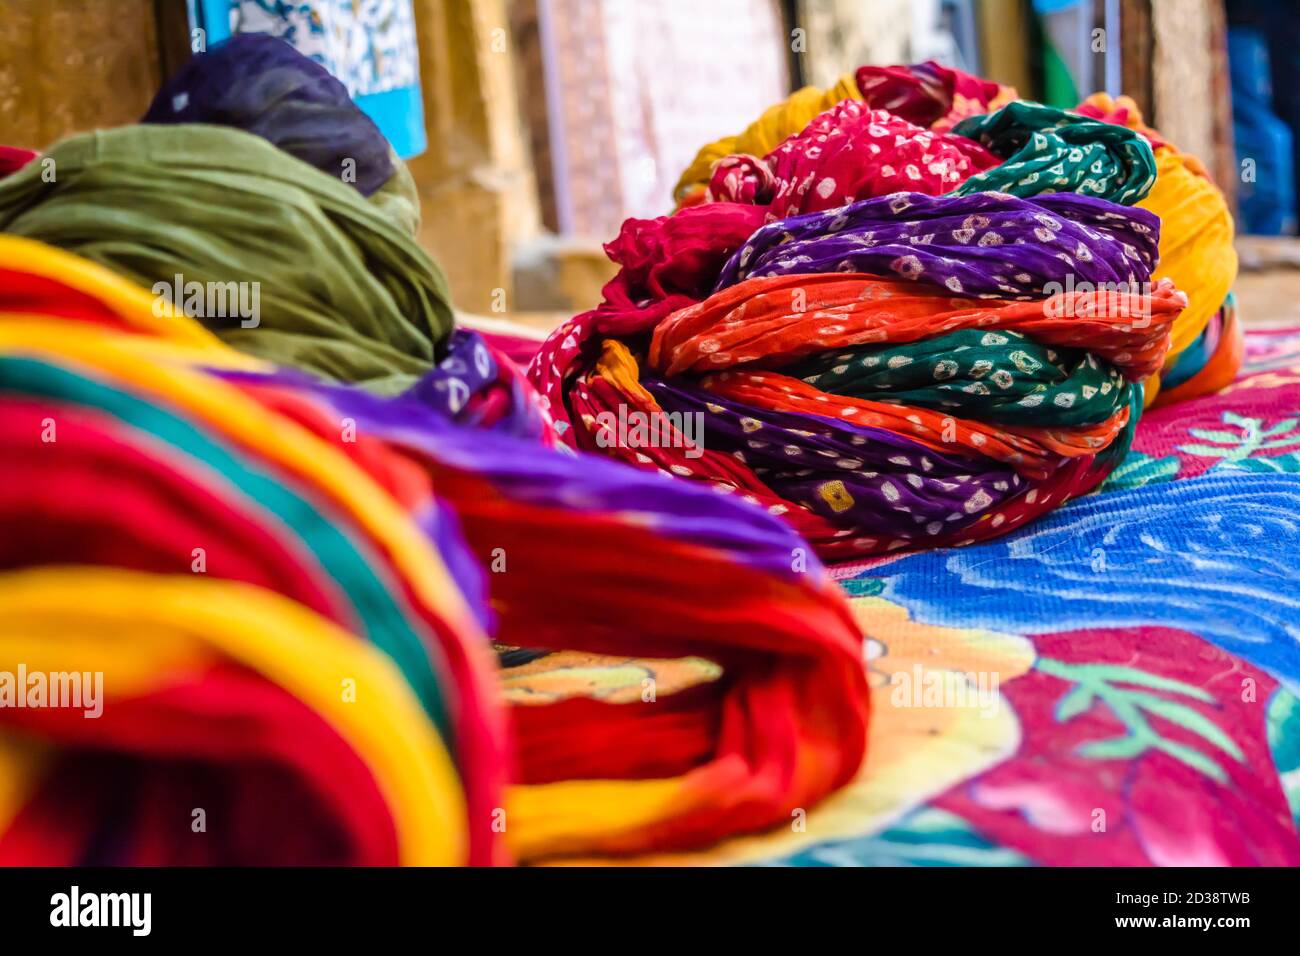 Rajasthani bunte Turban, Rajasthani Pagdis und Kleidung fängt die Aufmerksamkeit des Besuchers hier Stockfoto